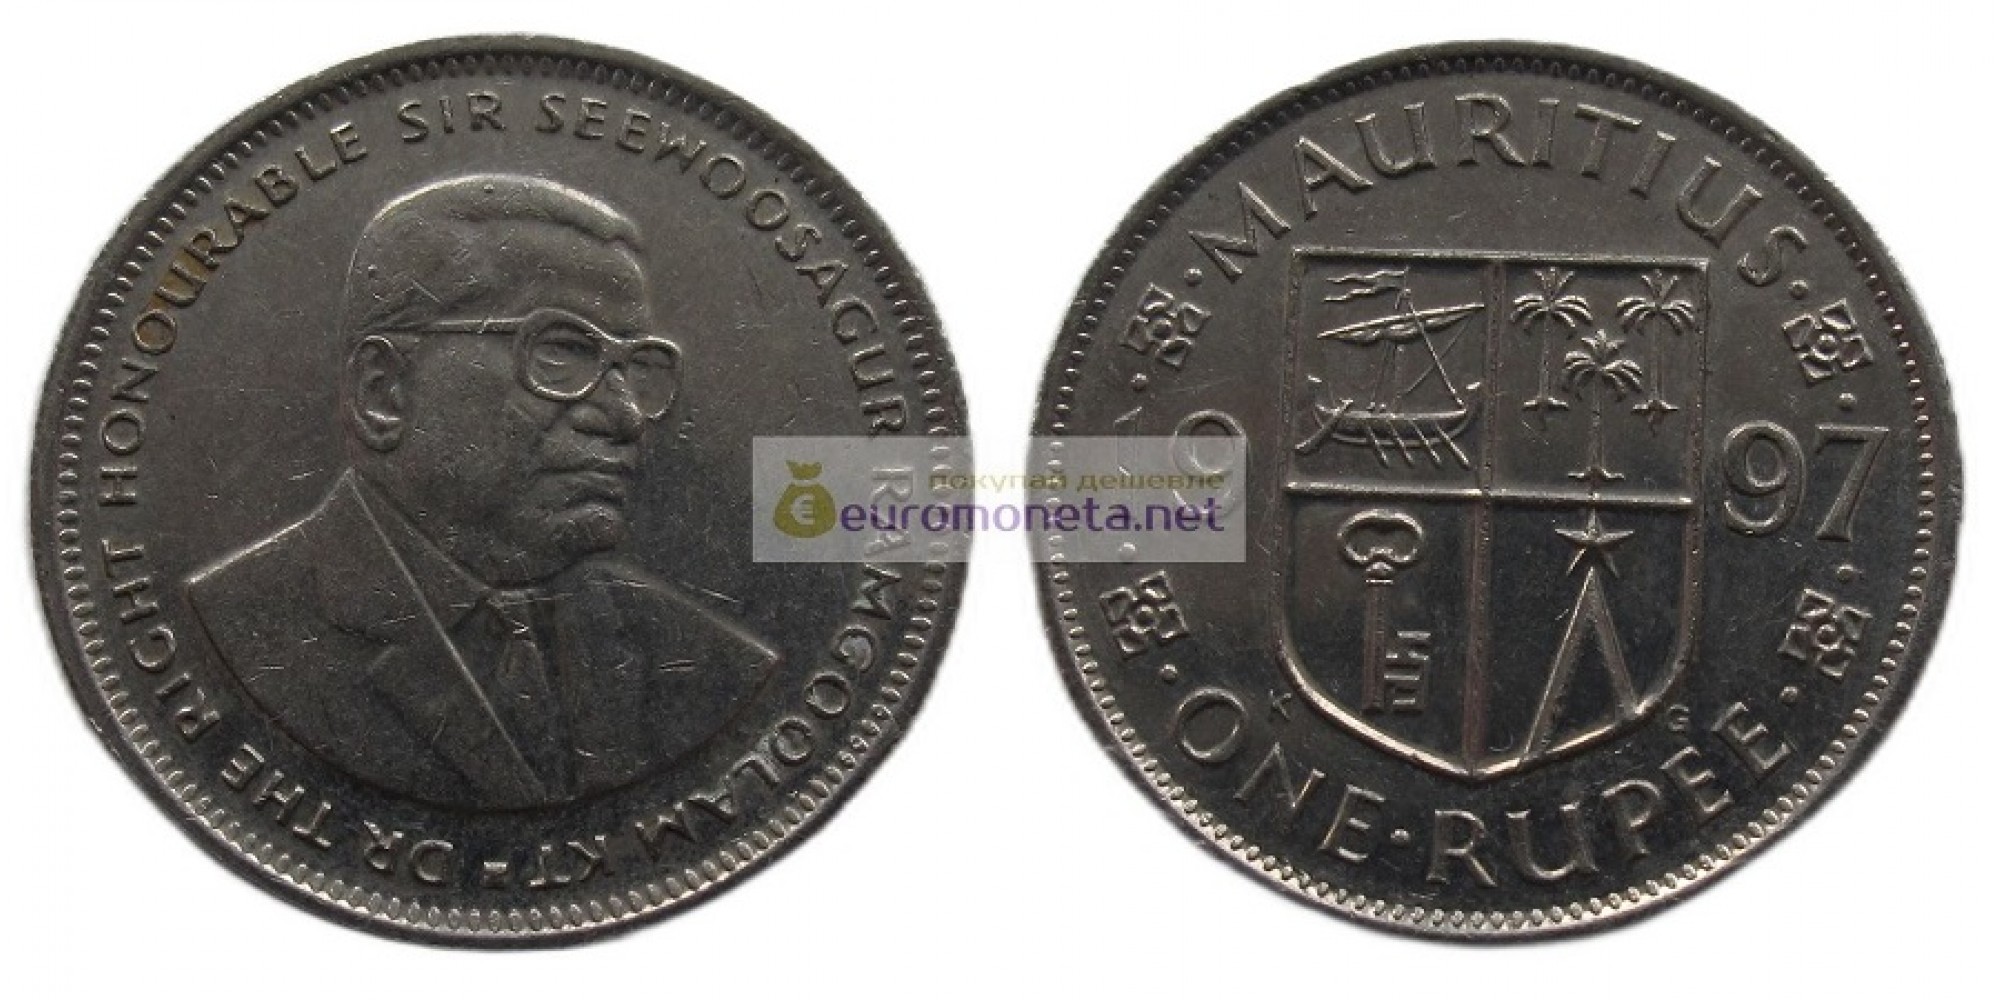 Республика Маврикий 1 рупия 1997 год. Сивусагур Рамгулам